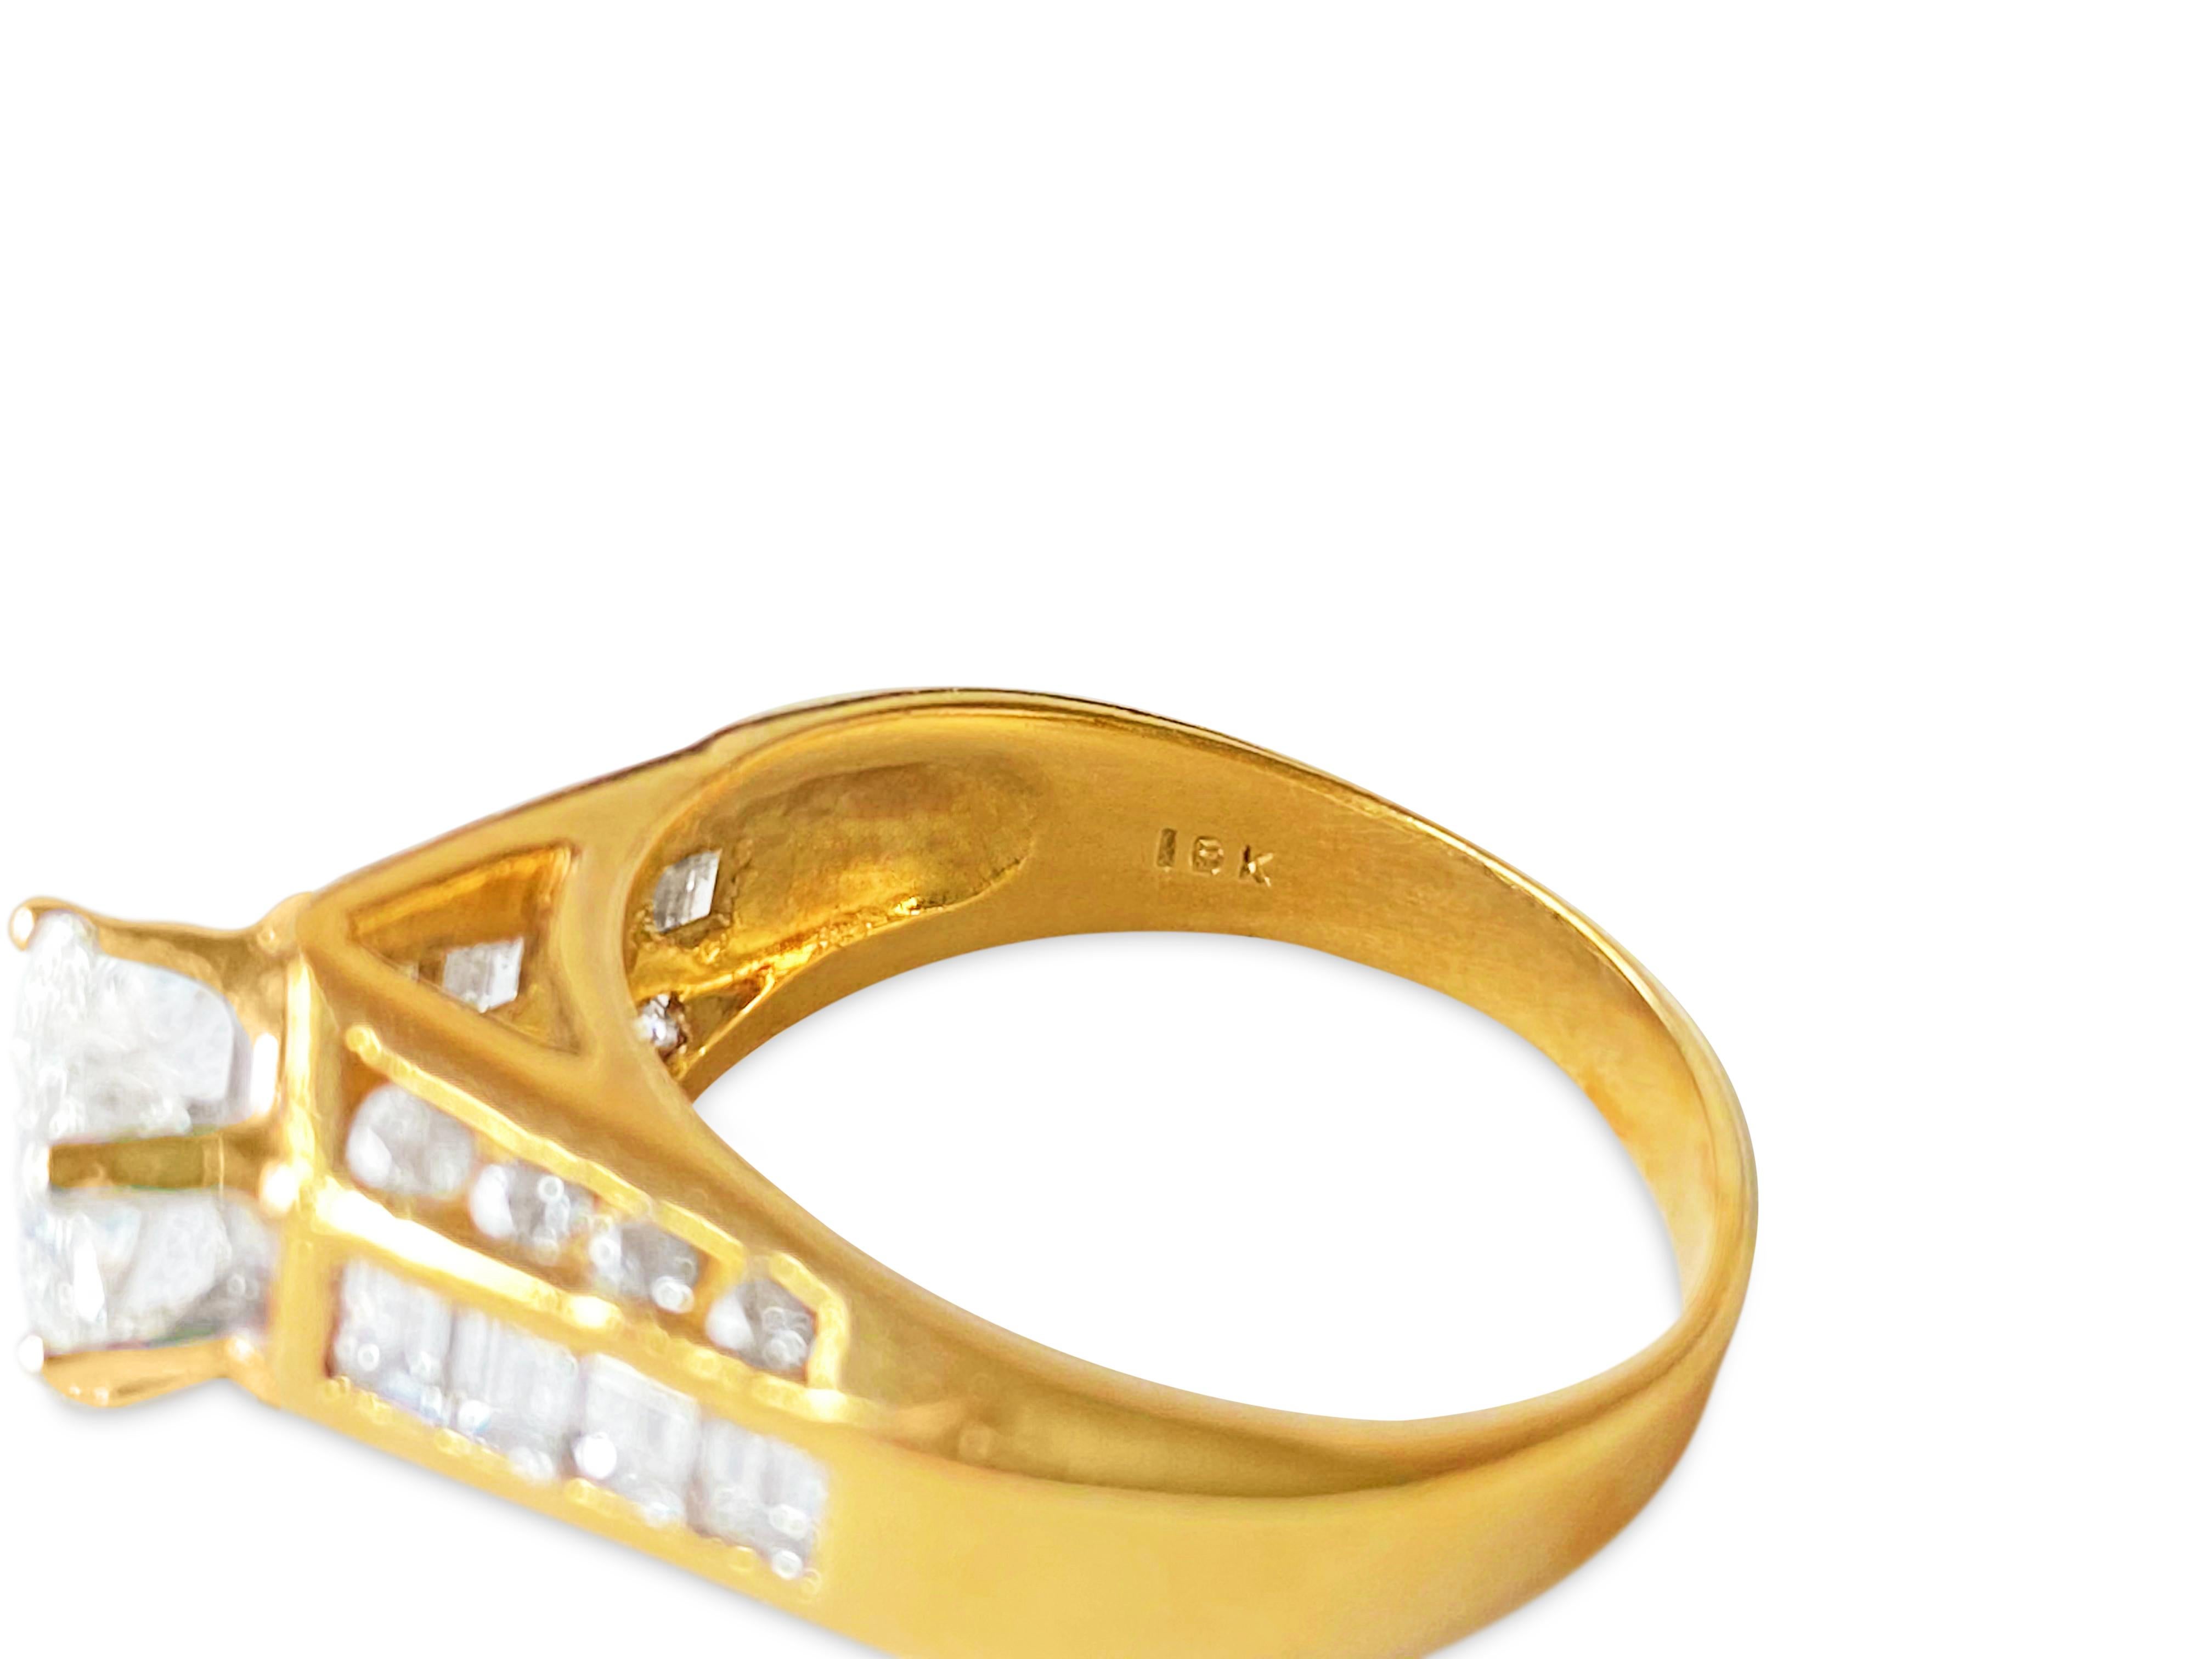 Dieser exquisite Ring aus massivem 18-karätigem Gelbgold ist ein wahres Zeugnis von Luxus. In seiner Mitte glänzt ein schillernder 1,00-Karat-Diamant im Birnenschliff mit der Reinheit VS1 und der Farbe G, der sicher an seinem Platz gehalten wird. Er